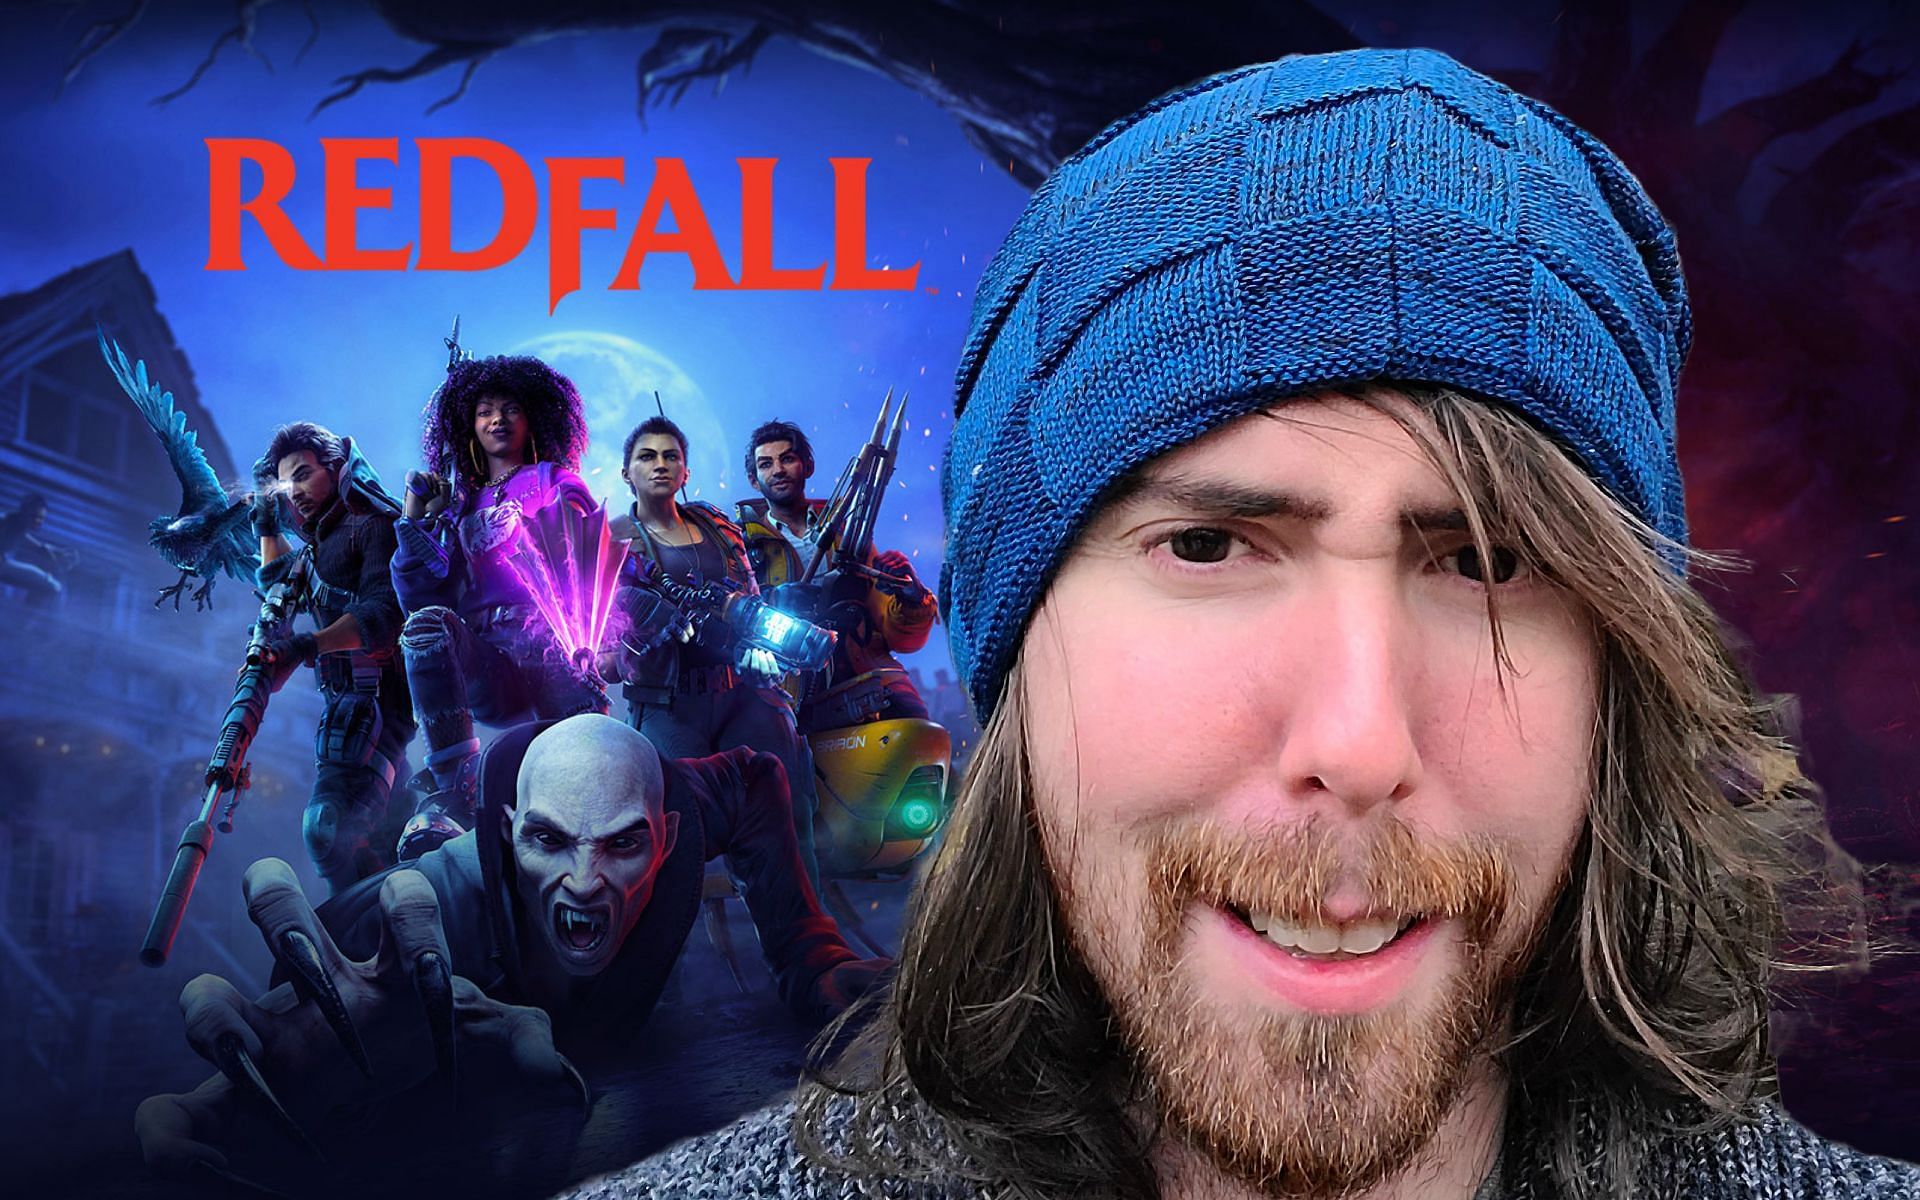 Asmongold afferma di essere stato “licenziato” dagli sviluppatori di Redfall dopo aver definito il gioco uno “sparatutto noioso e non fantasy”